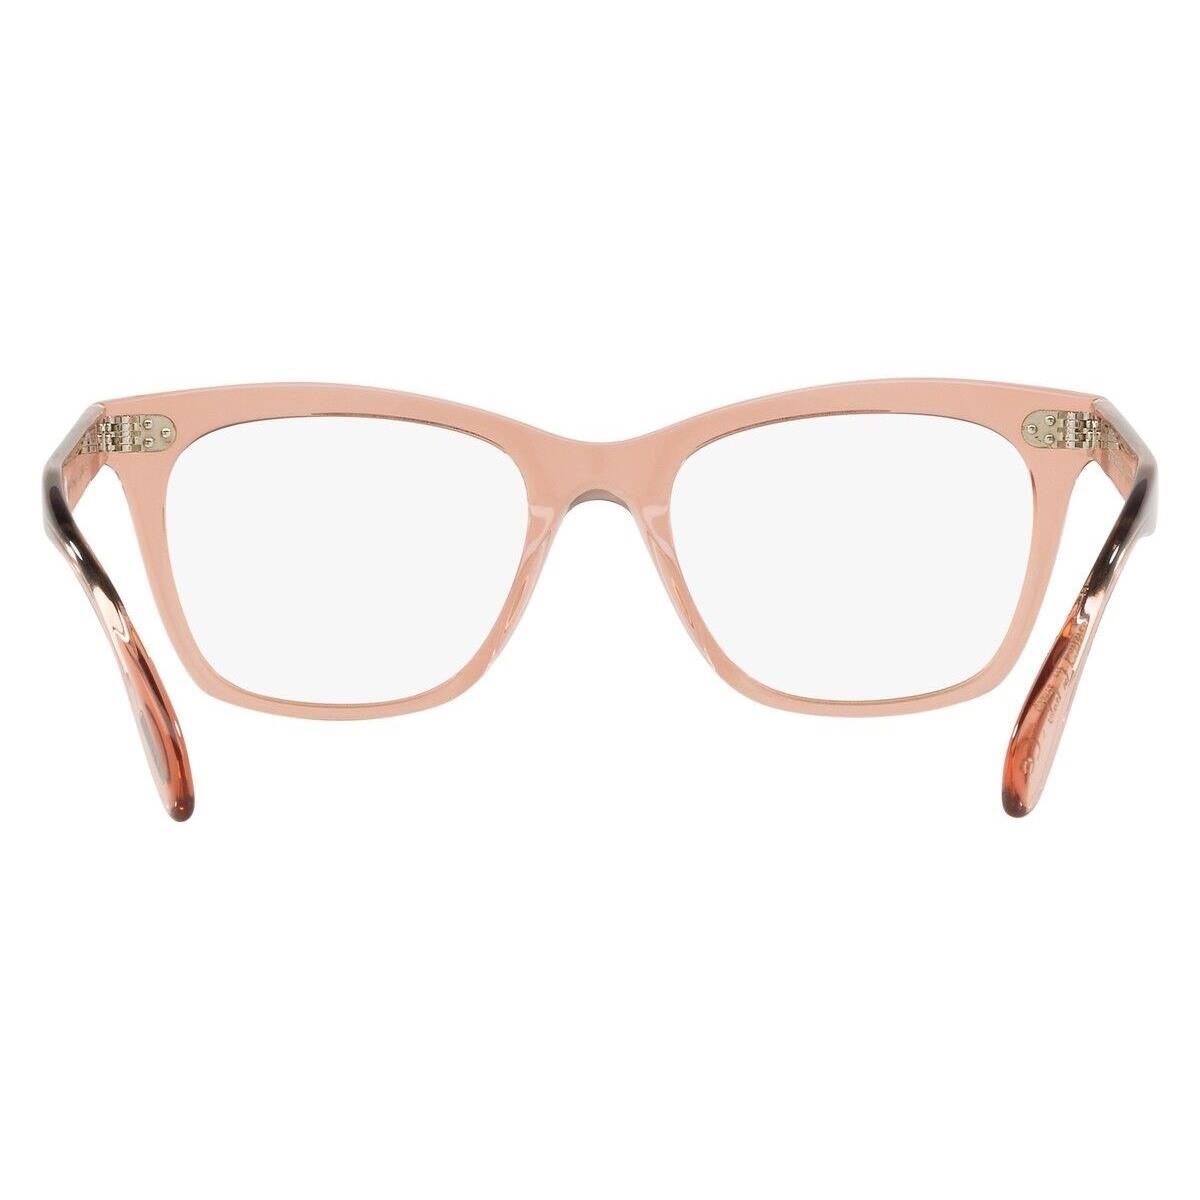 Oliver Peoples eyeglasses  - Frame: 1